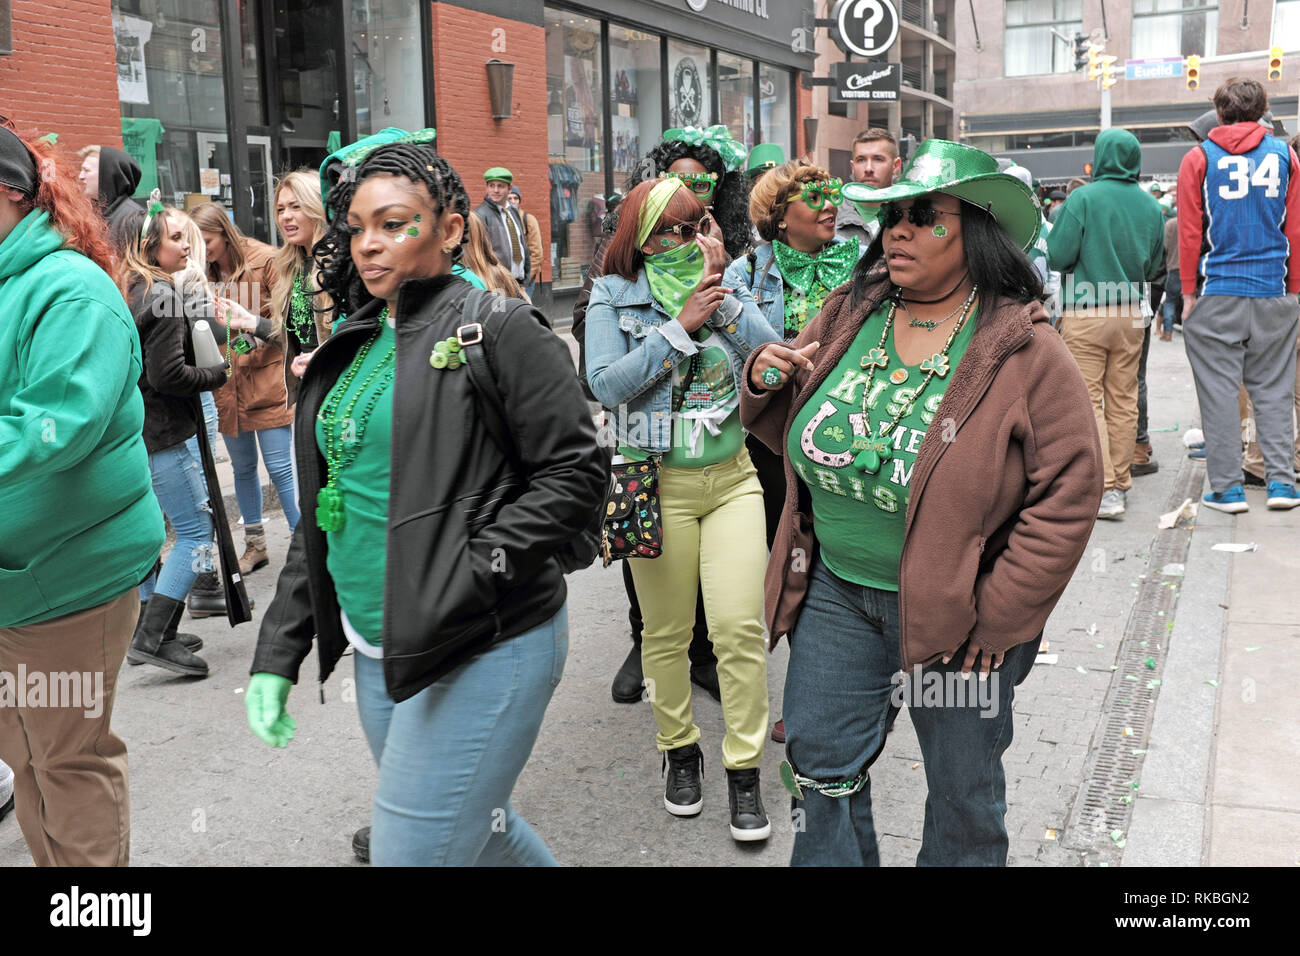 La festa di san Patrizio celebranti vestito di verde fanno il loro Way Down East 4th Street in Cleveland, Ohio, Stati Uniti d'America. durante il giorno lungo la celebrazione. Foto Stock